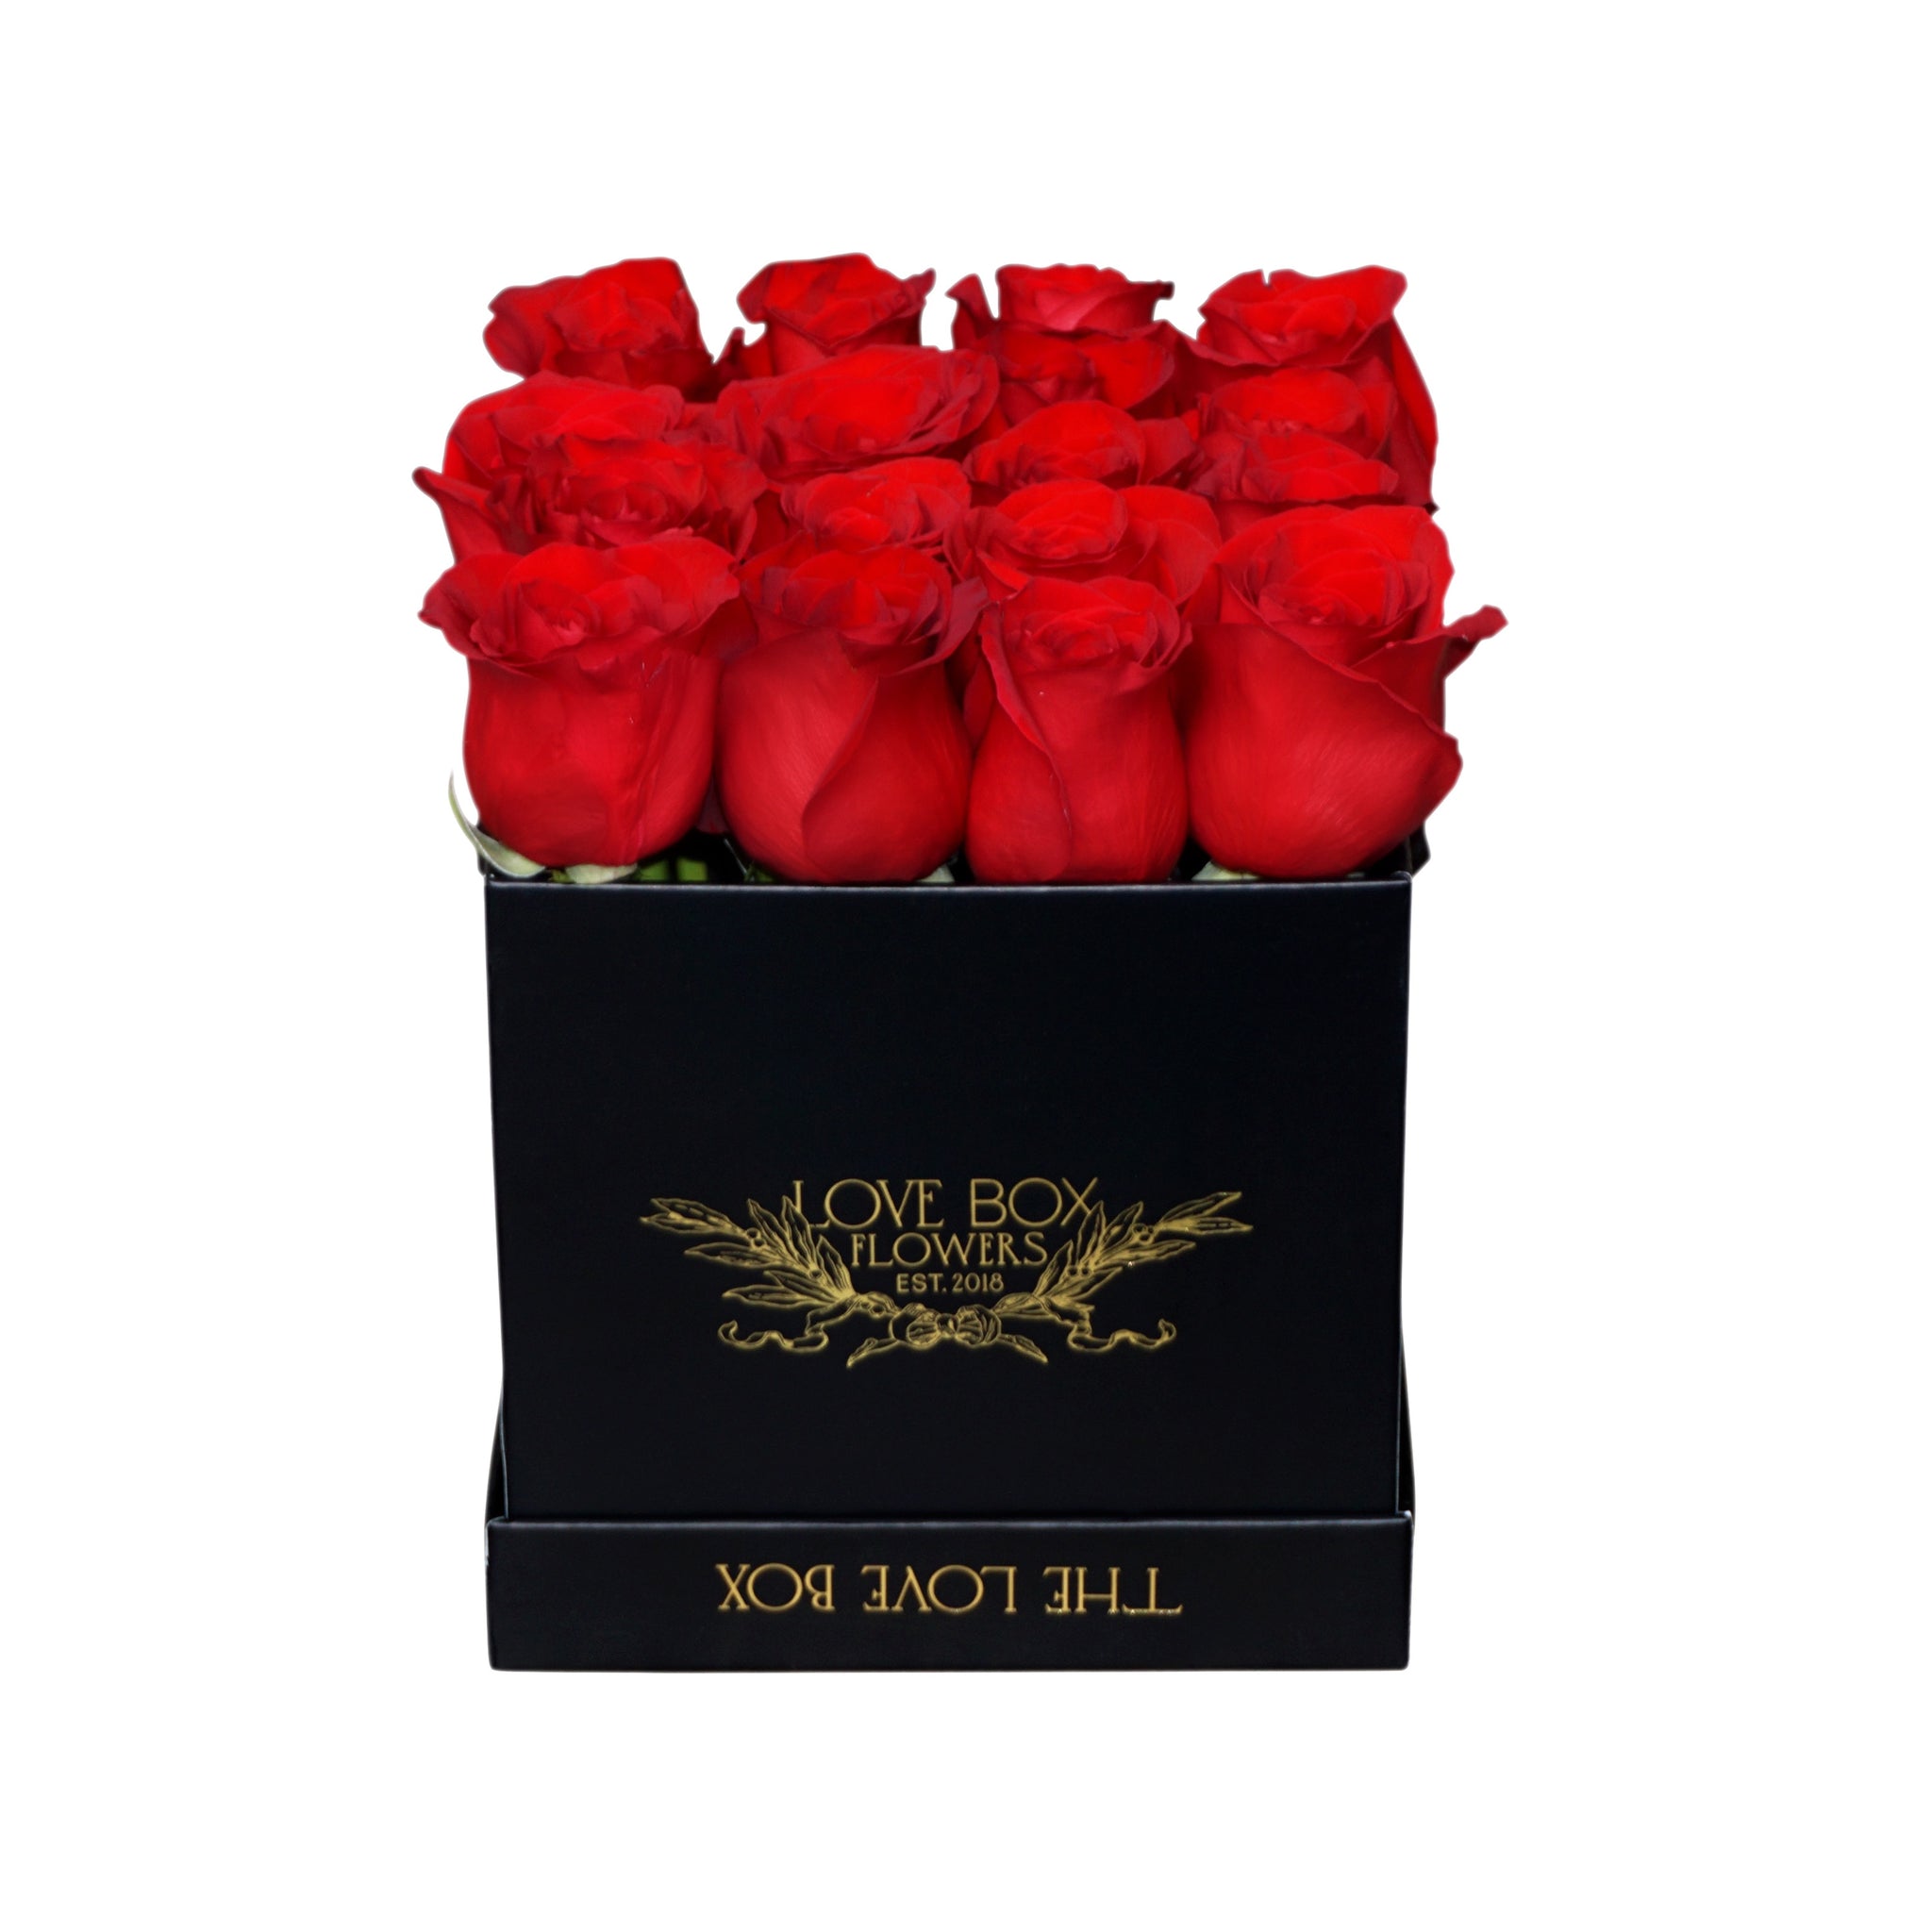 Red Roses in Medium Black Square Box